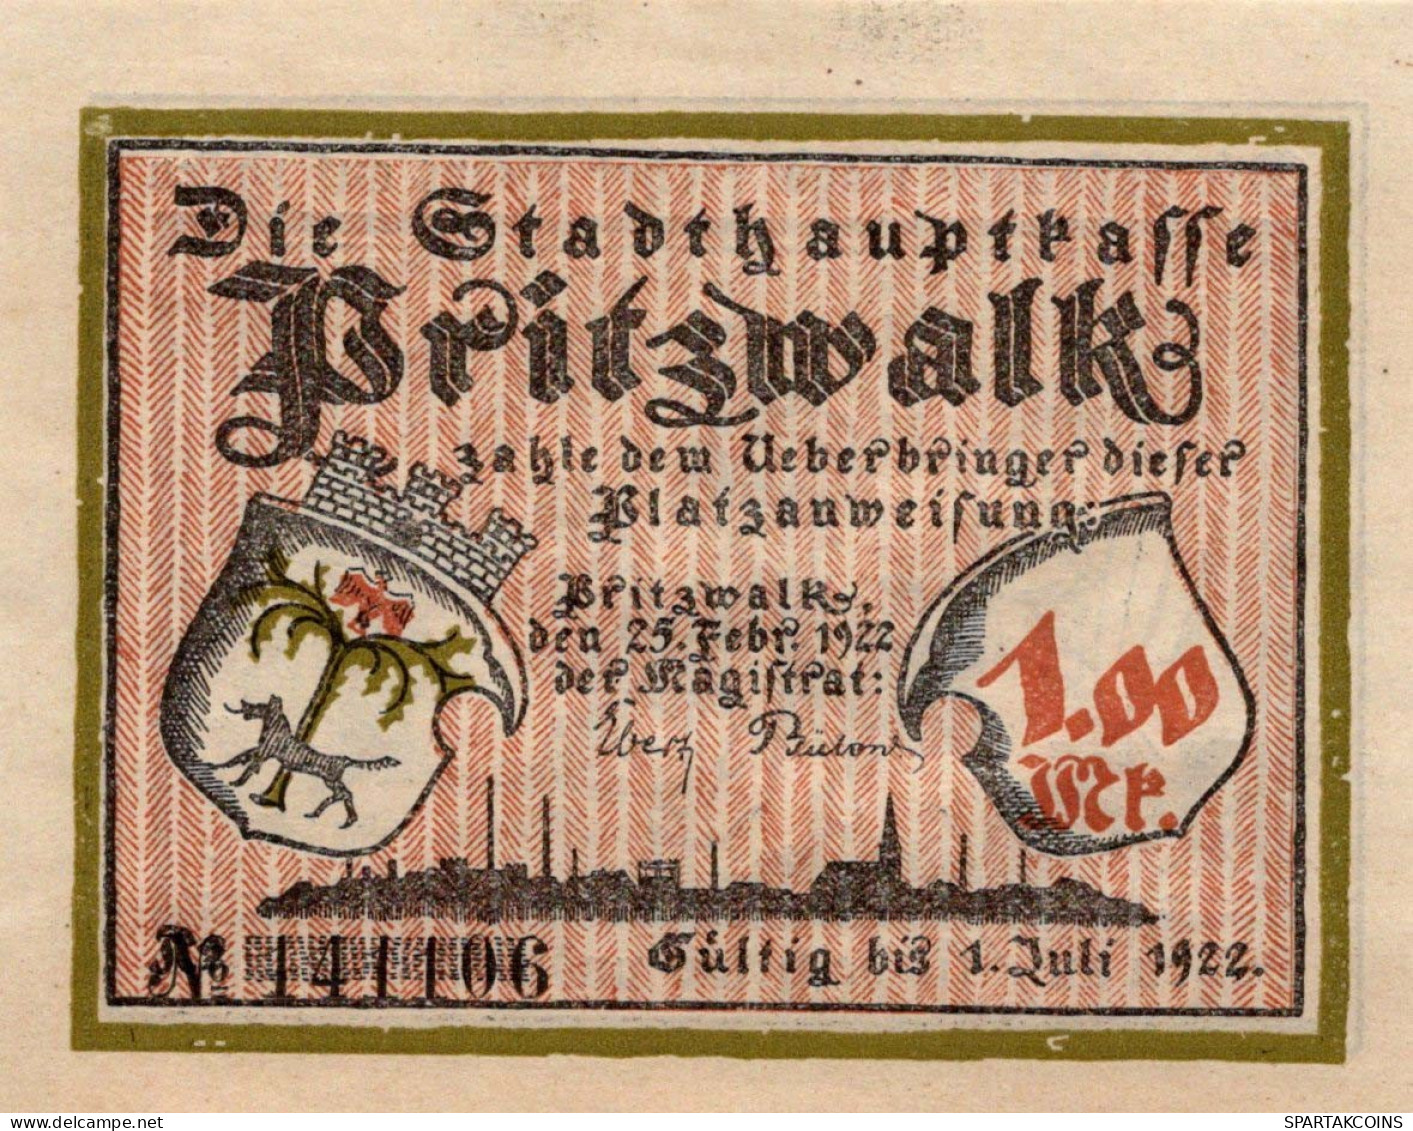 1 MARK 1922 Stadt PRITZWALK Brandenburg UNC DEUTSCHLAND Notgeld Banknote #PB746 - [11] Local Banknote Issues